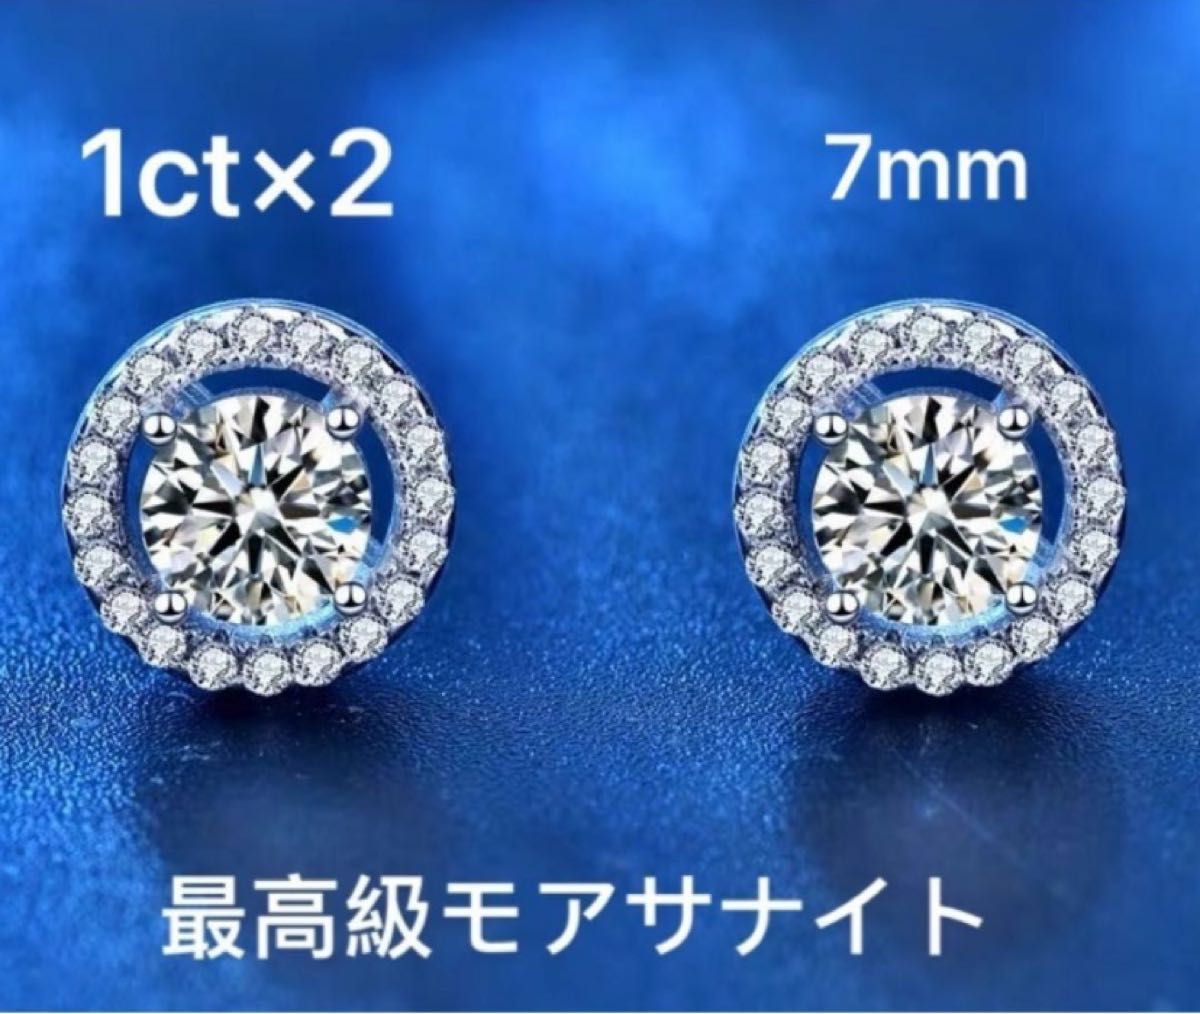 最高品質モアサナイト 1ct×2 計2ct 4爪 一粒 人工ダイヤモンド ピアス 